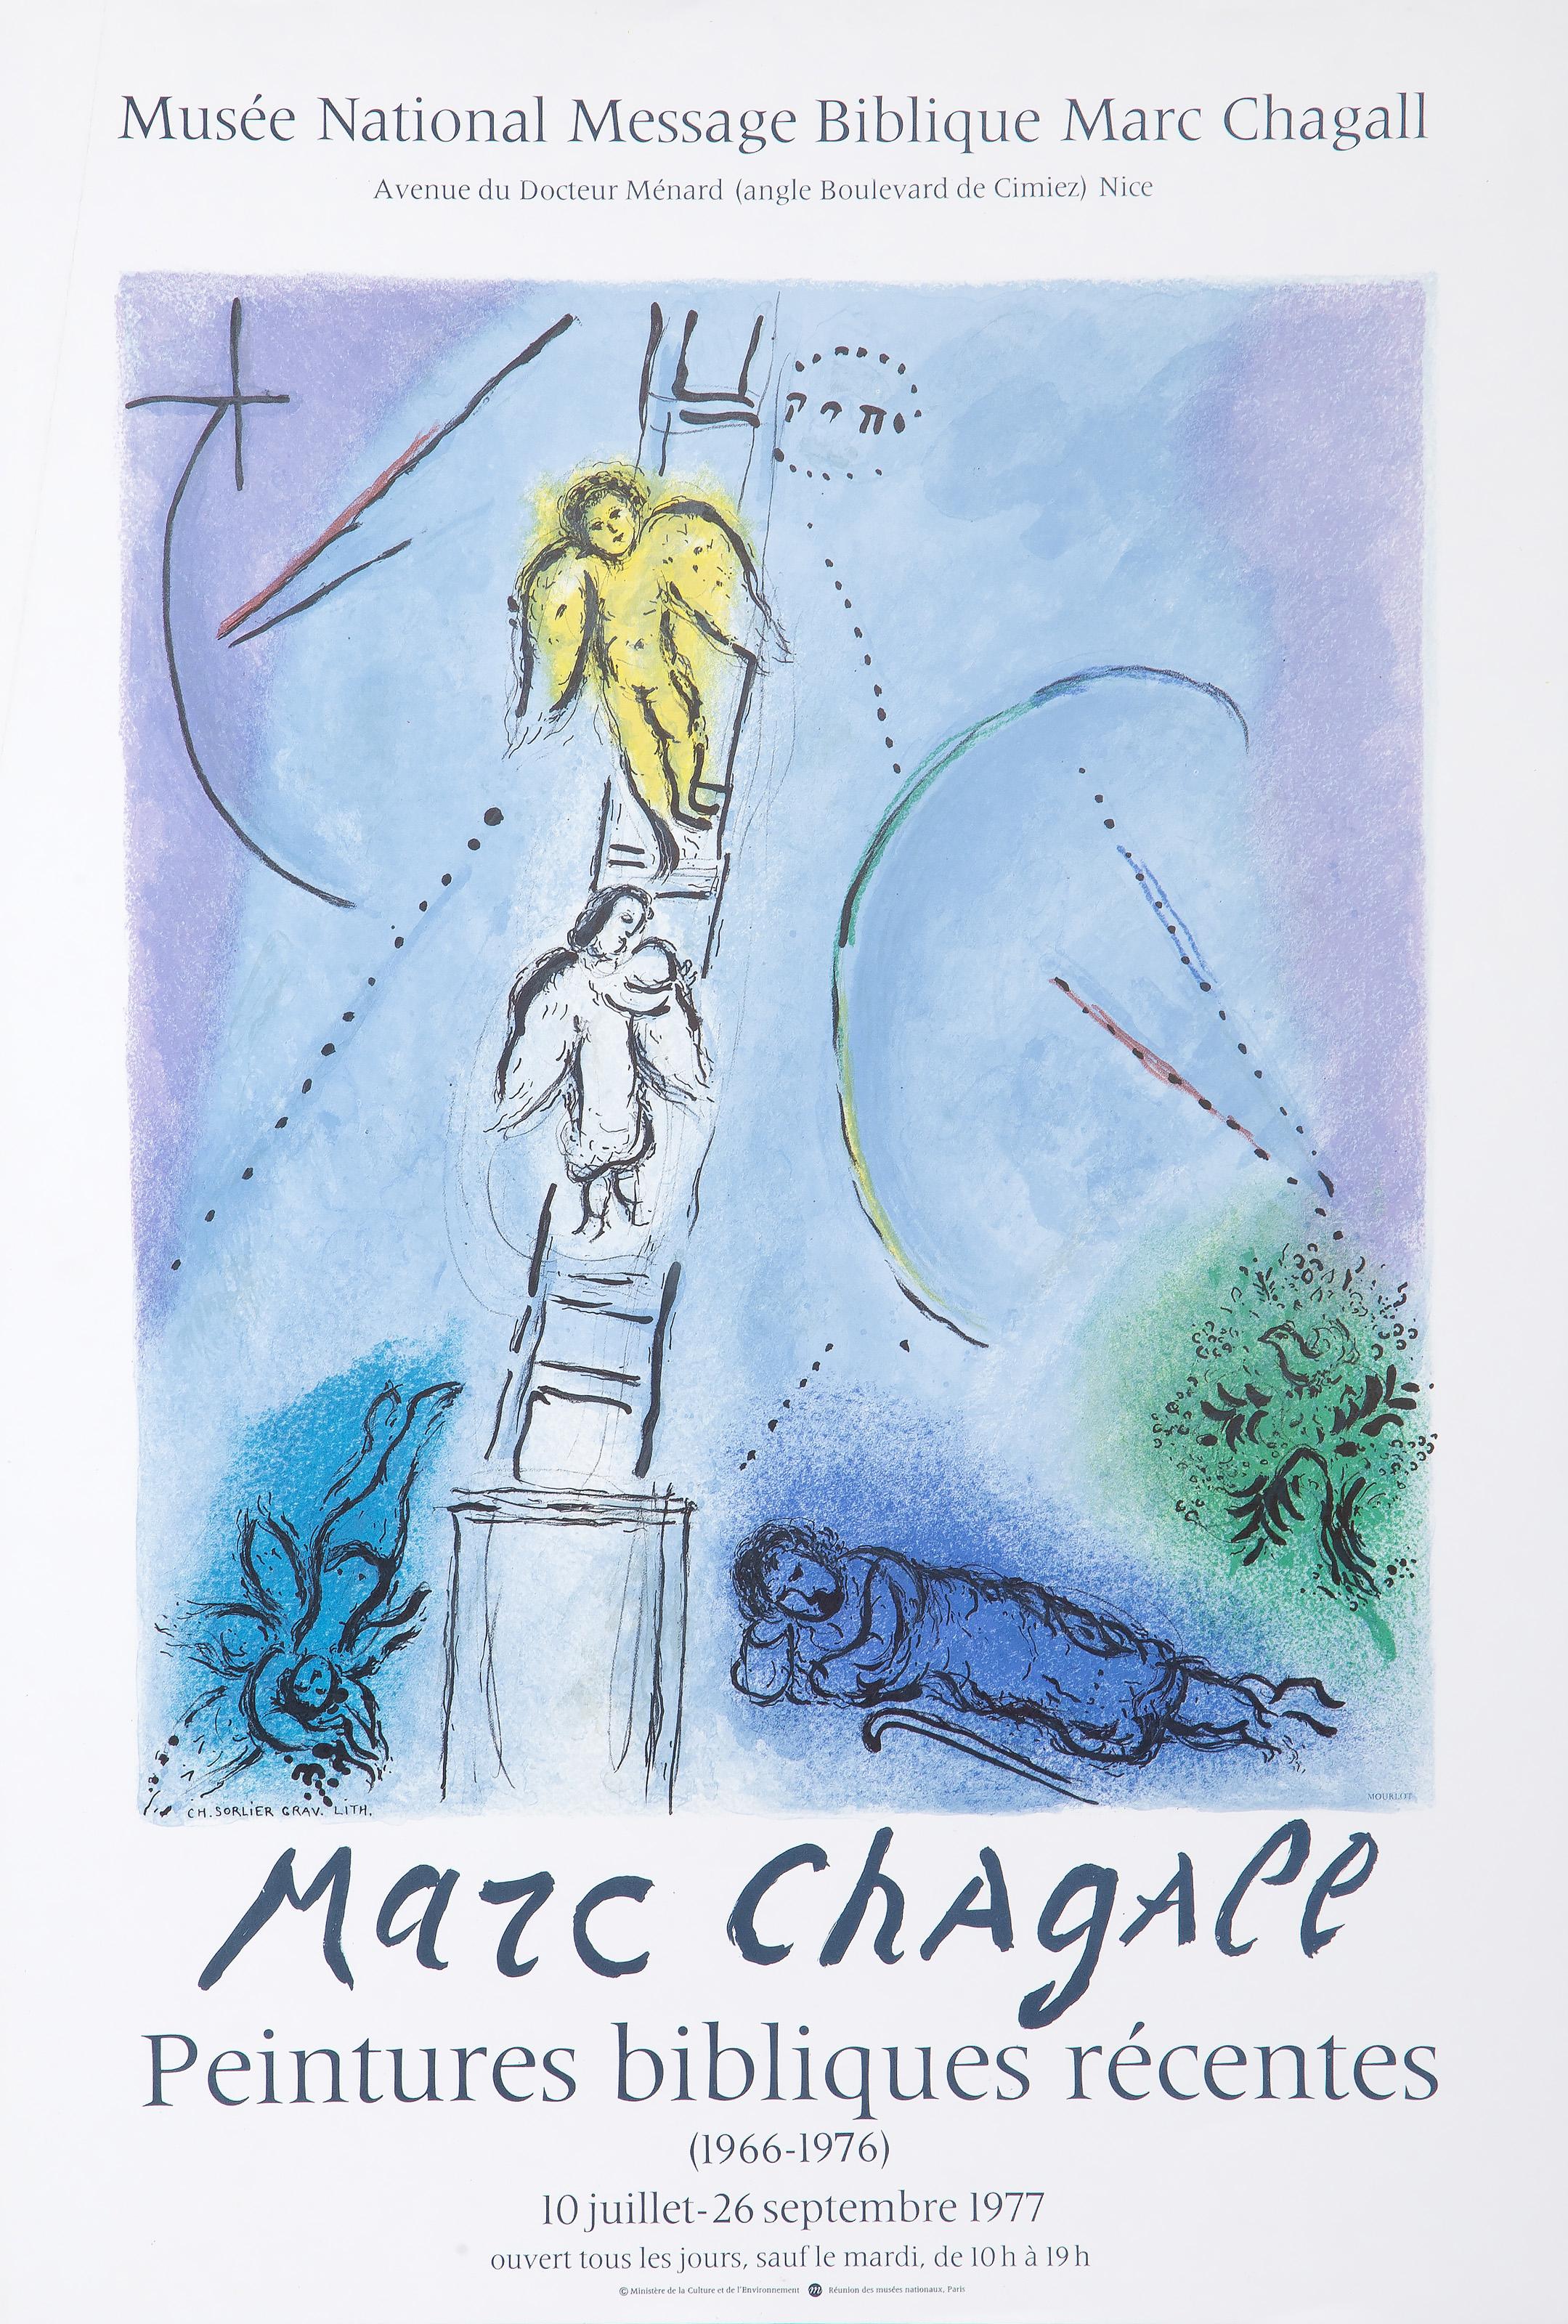 Marc Chagall, After by Charles Sorlier, Russian (1887 - 1985) -  Jacob's Ladder. Year: 1977, Medium: Lithograph Poster, Size: 30 x 20.5 in. (76.2 x 52.07 cm), Printer: Mourlot, Paris, Publisher: Minisistere de la Culture et de l'Environment 